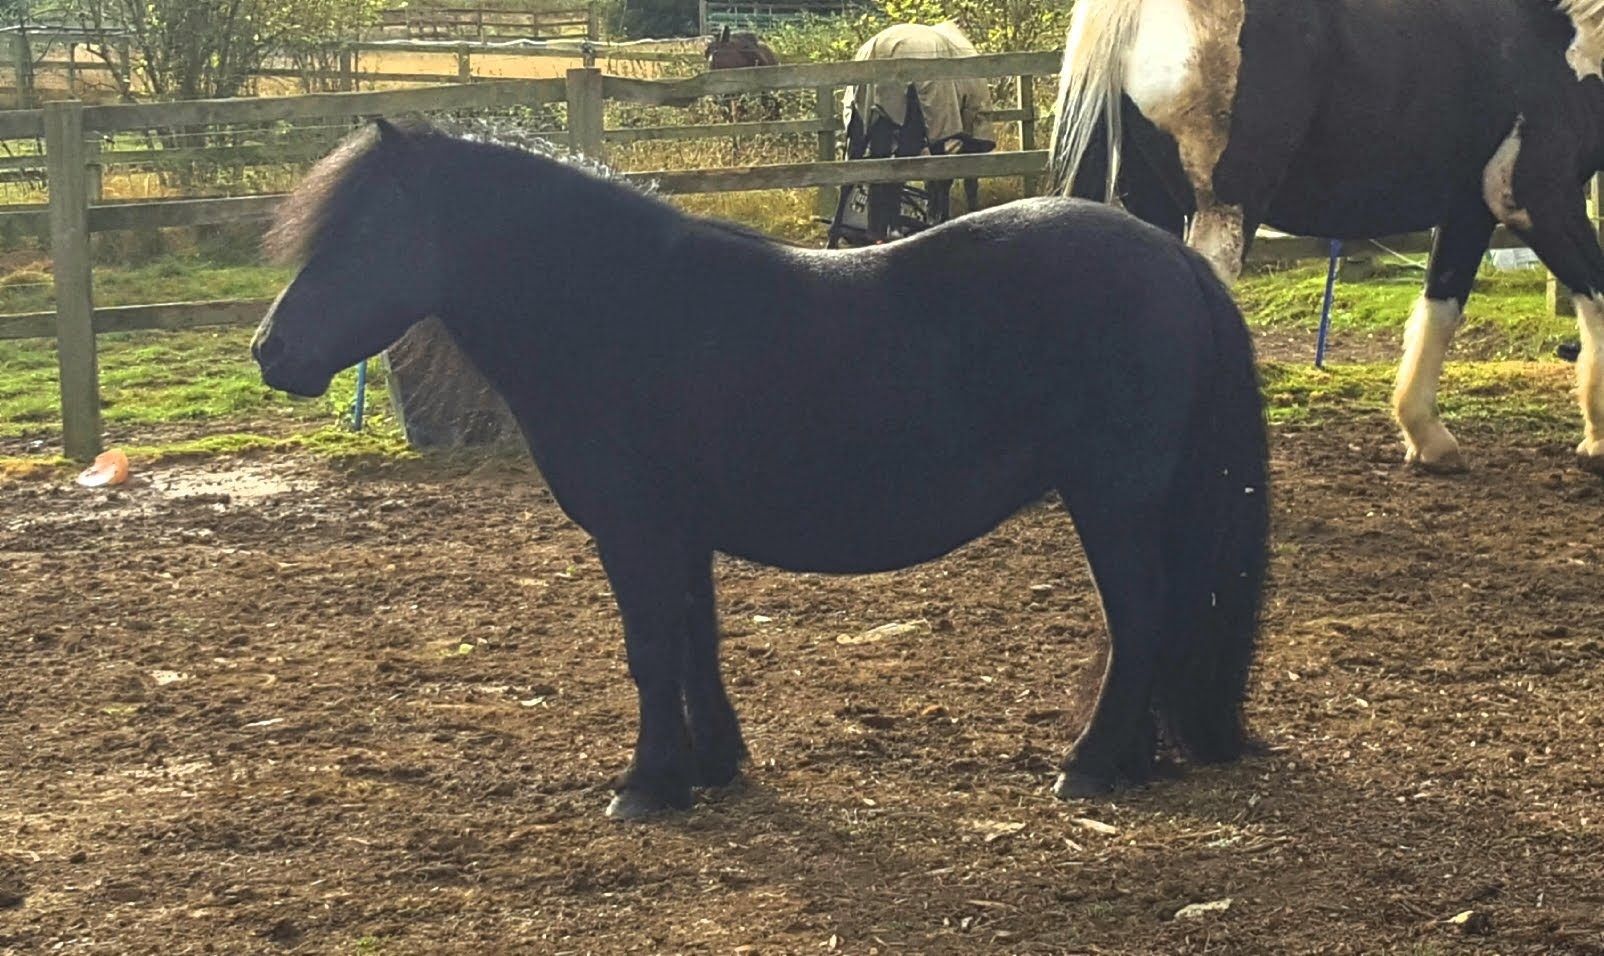 Shetland Pony in the field